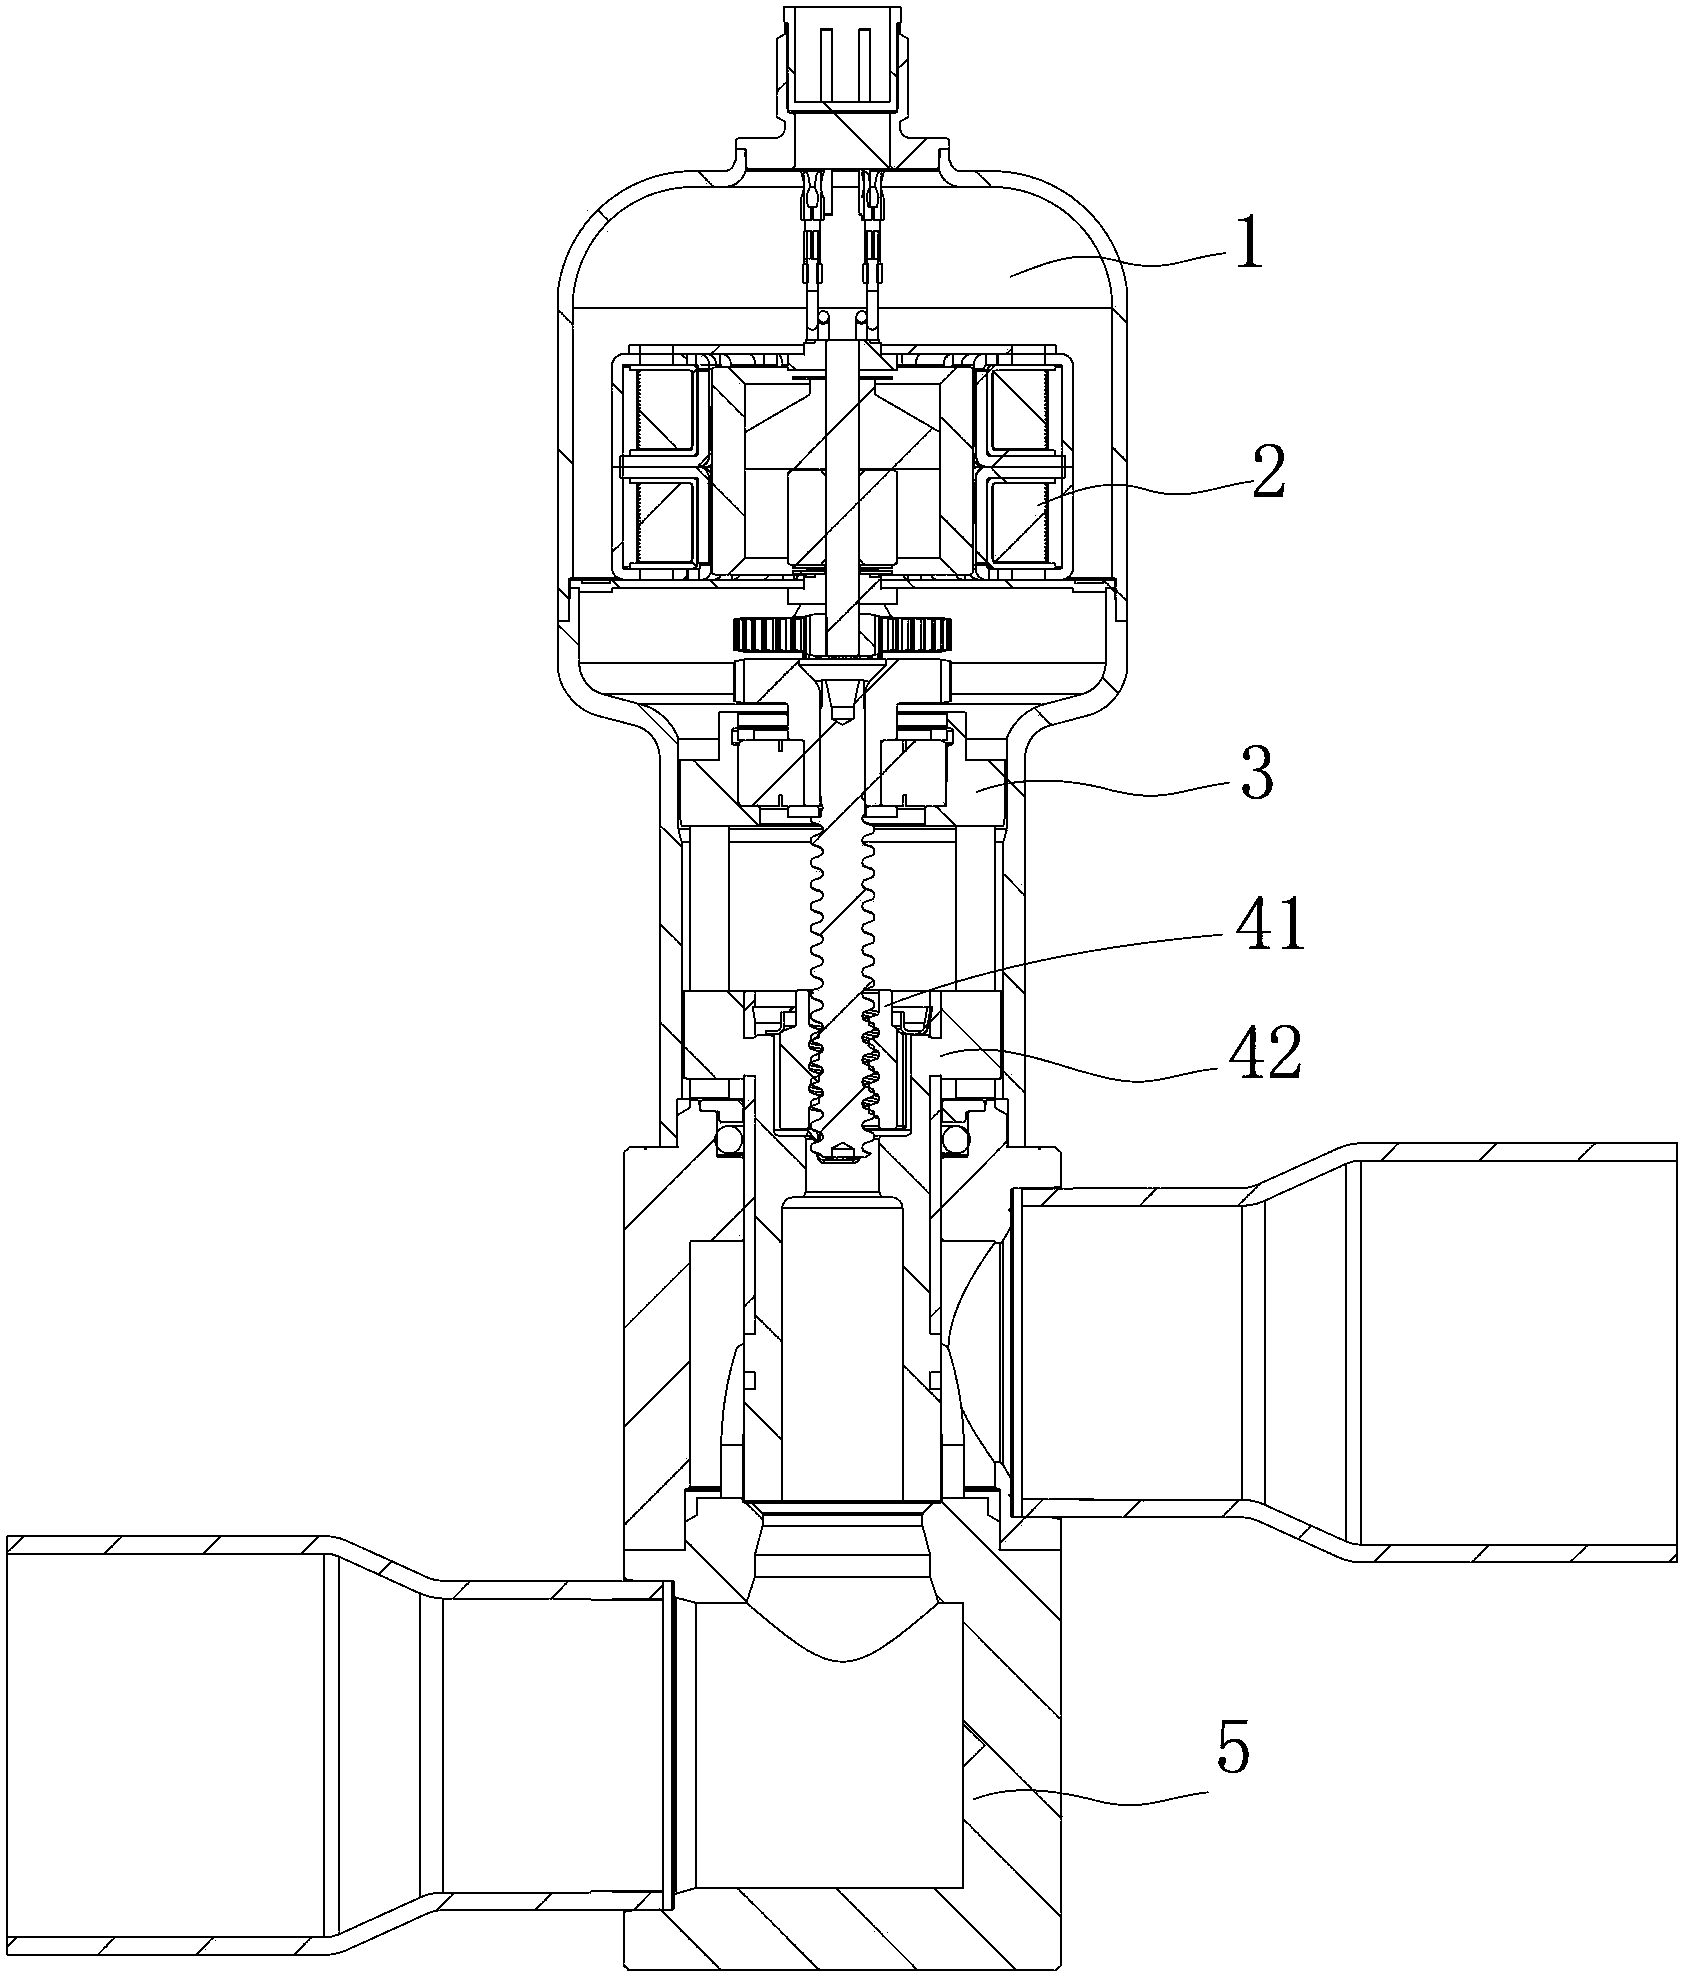 Flow adjusting valve